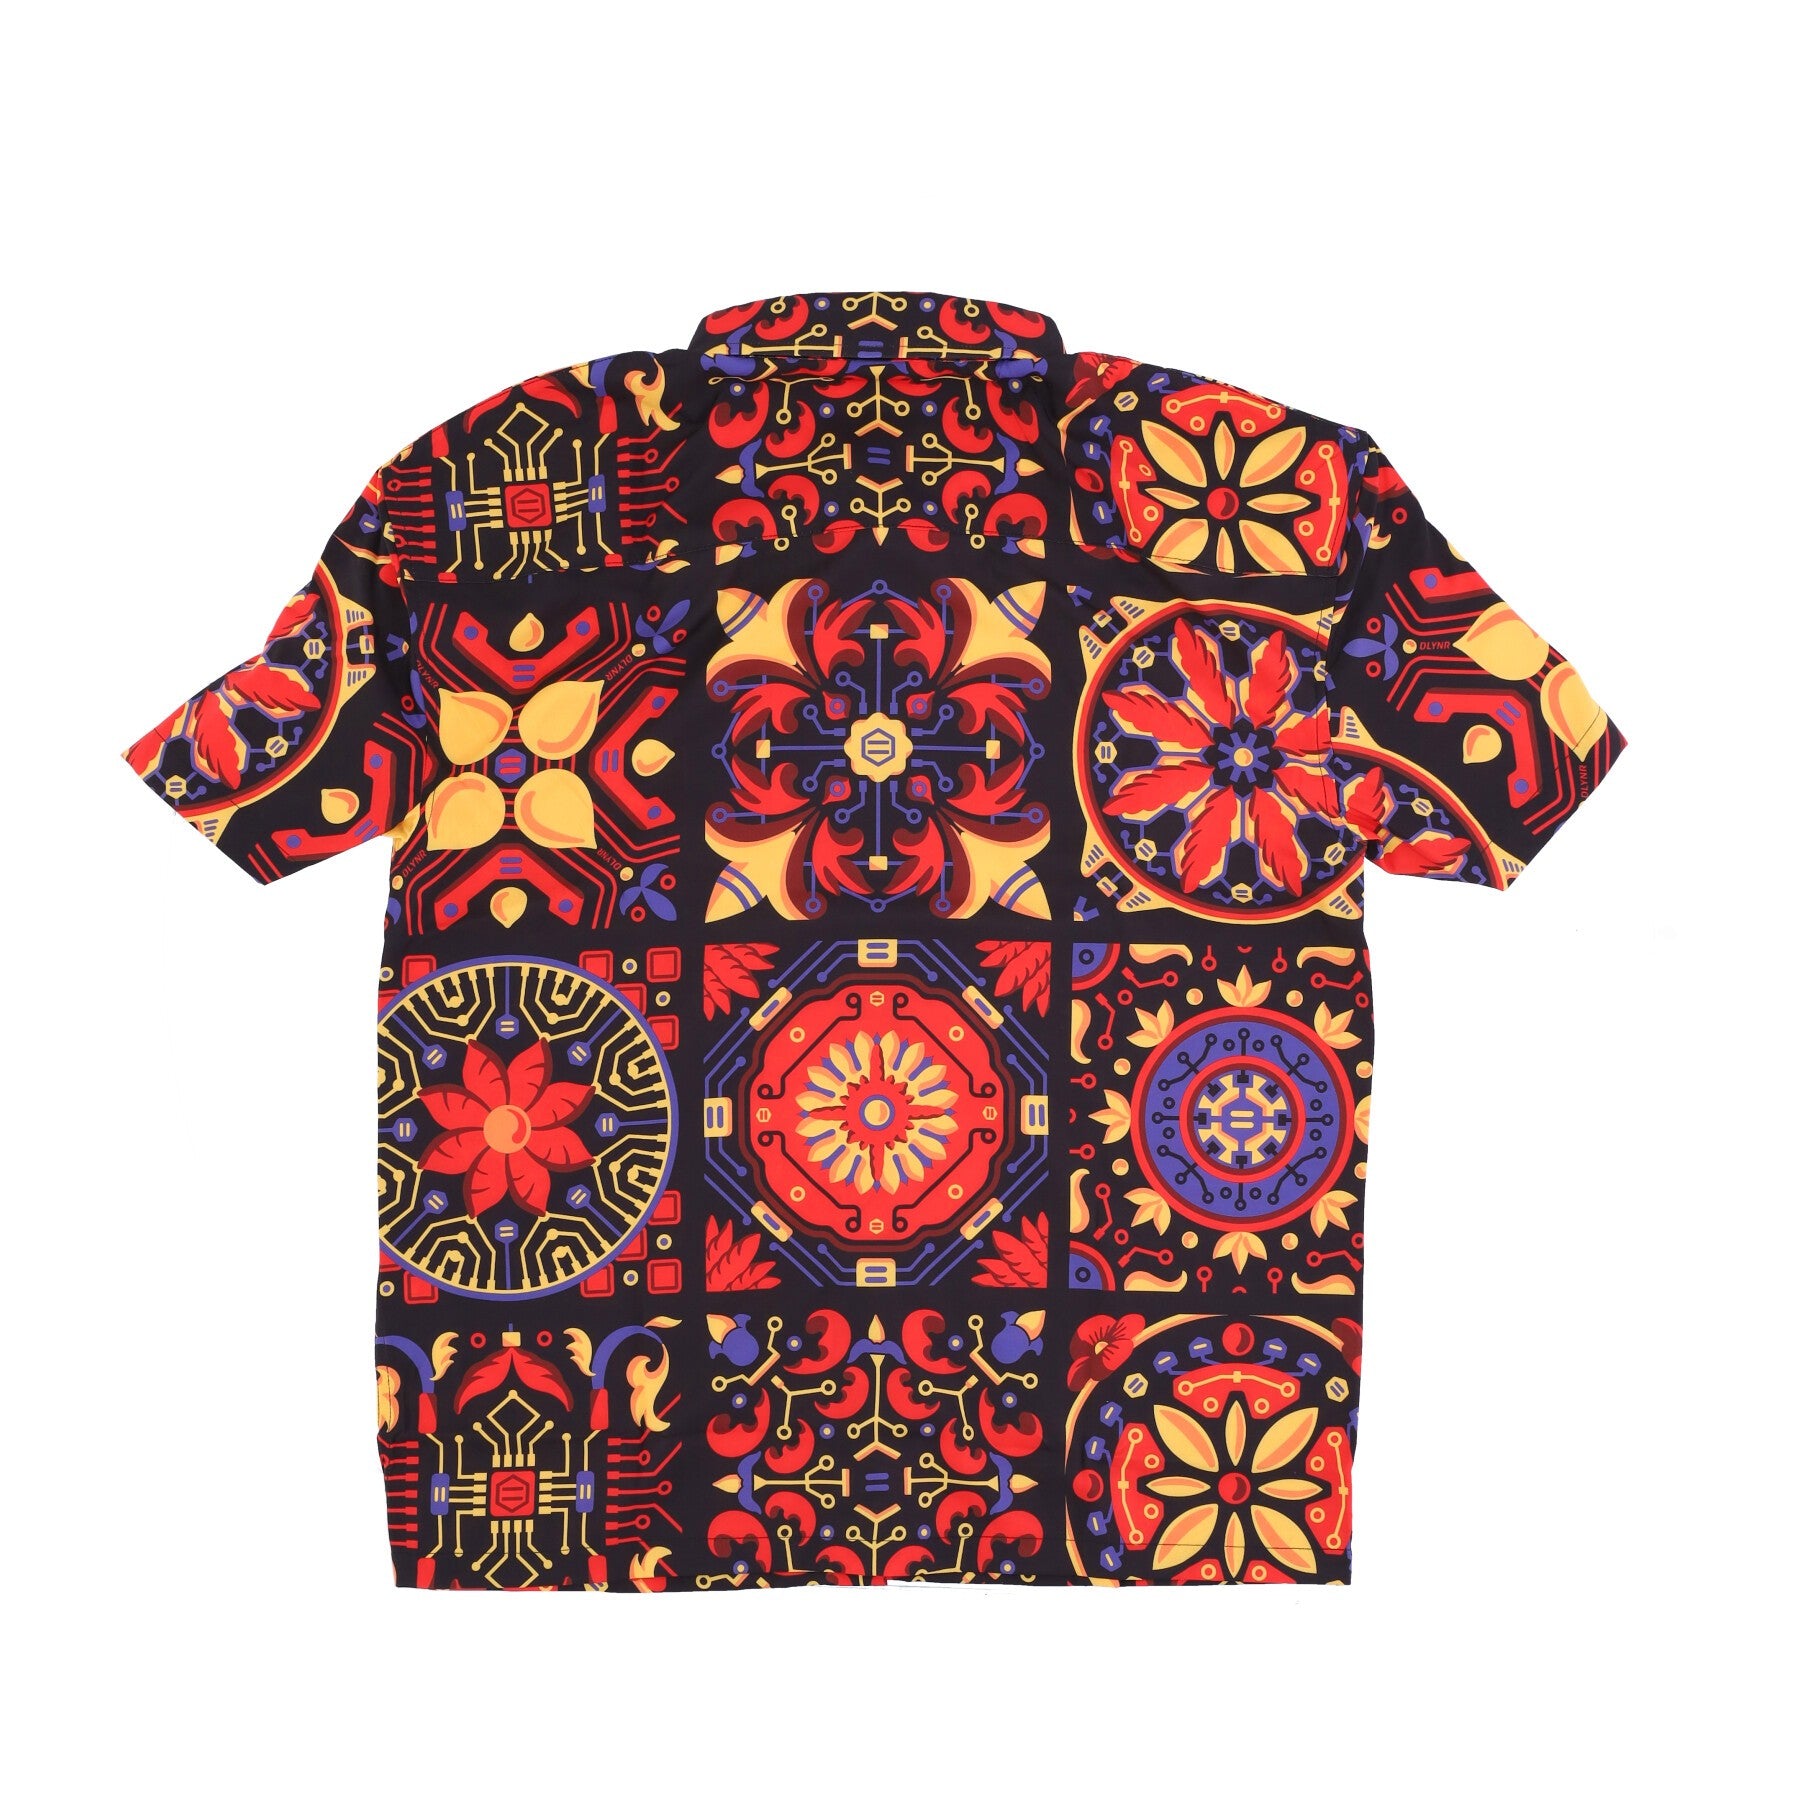 Men's Short Sleeve Shirt Red Majolica Pattern Oversize Shirt Multi